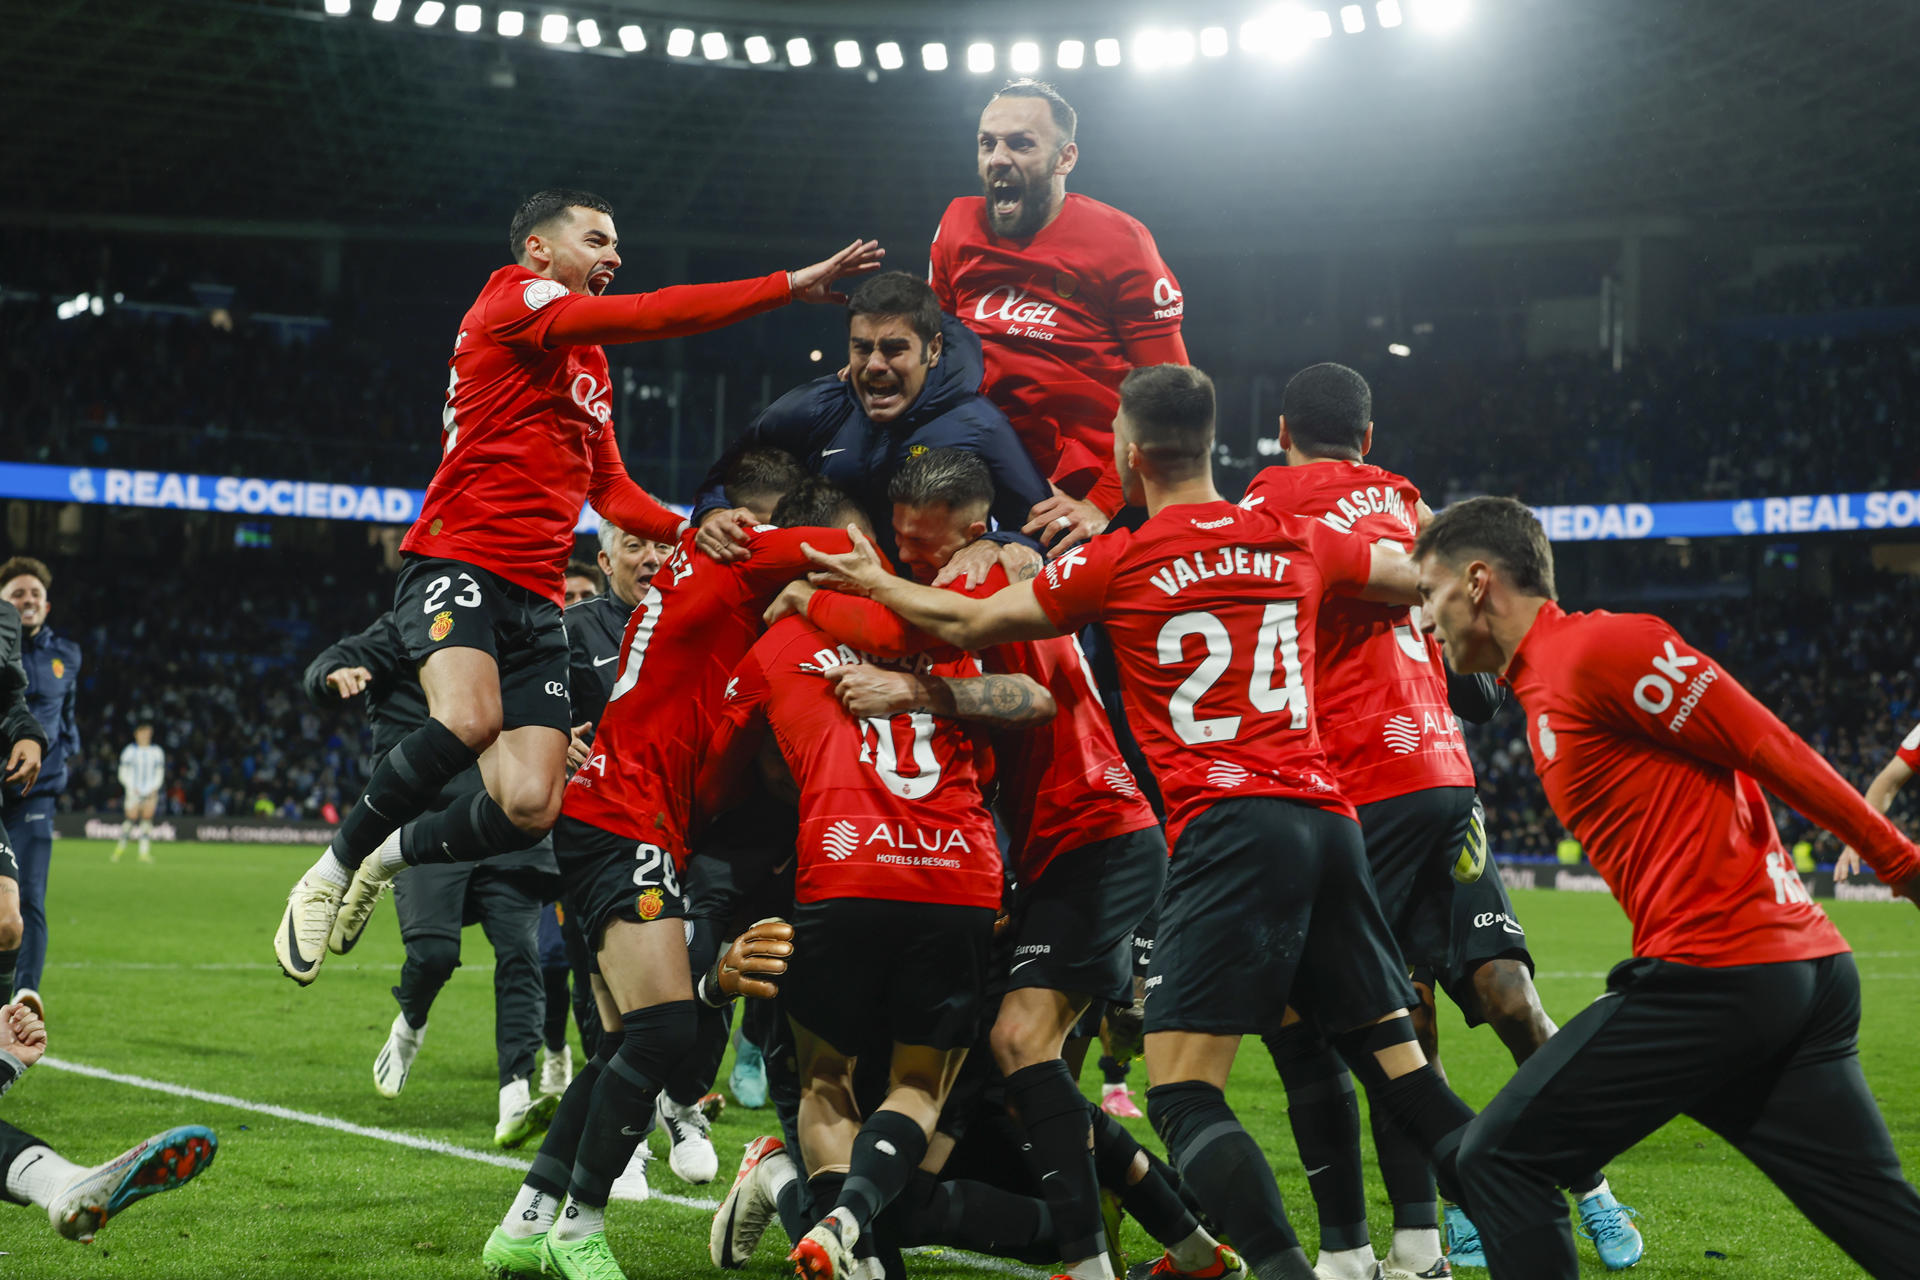 Jugadors del Mallorca celebrant el passi a la final de la Copa del Rei. EFE/Javier Etxezarreta